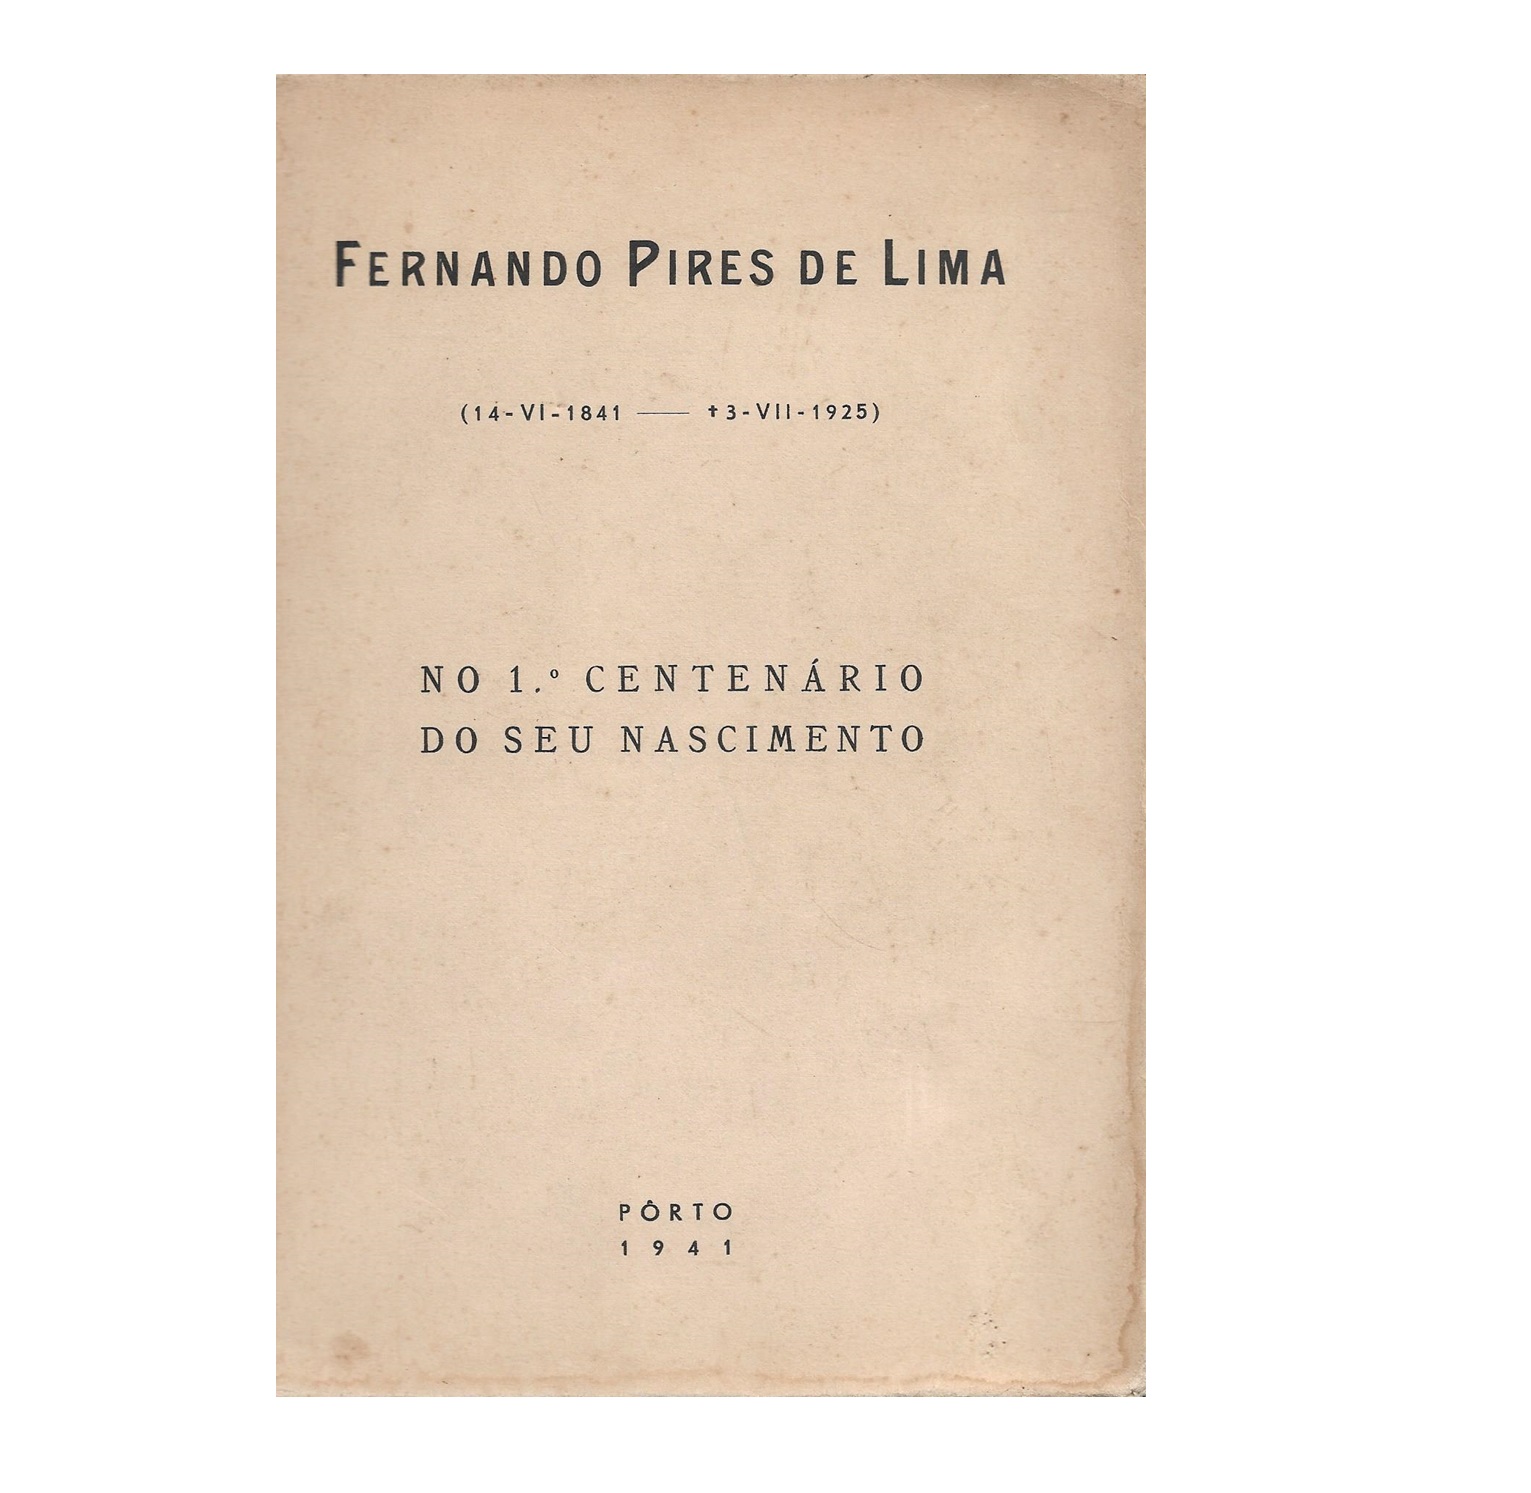 FERNANDO PIRES DE LIMA